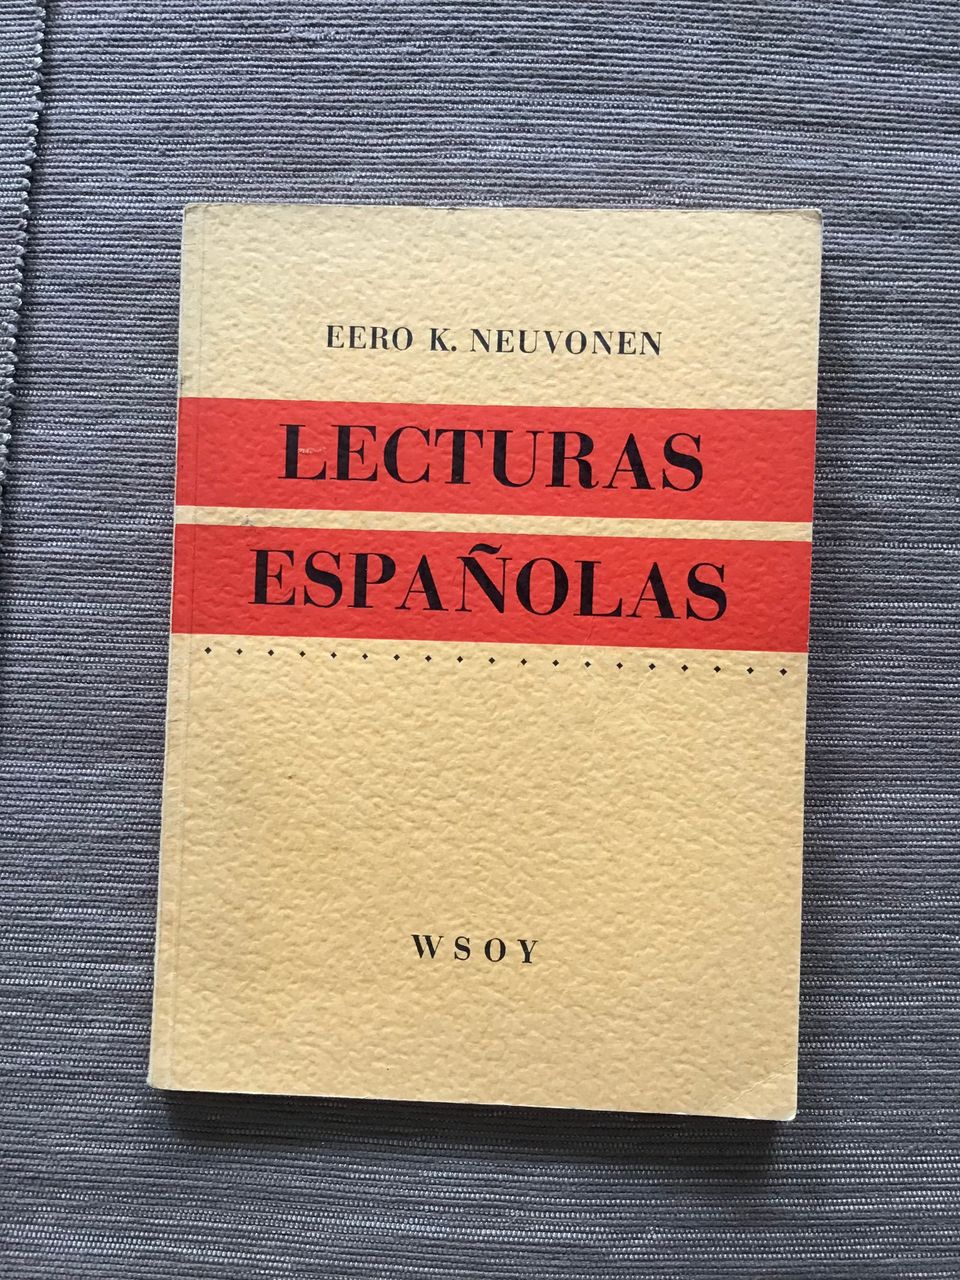 Eero K. Neuvonen : Lecturas Espanolas ( 1951 )